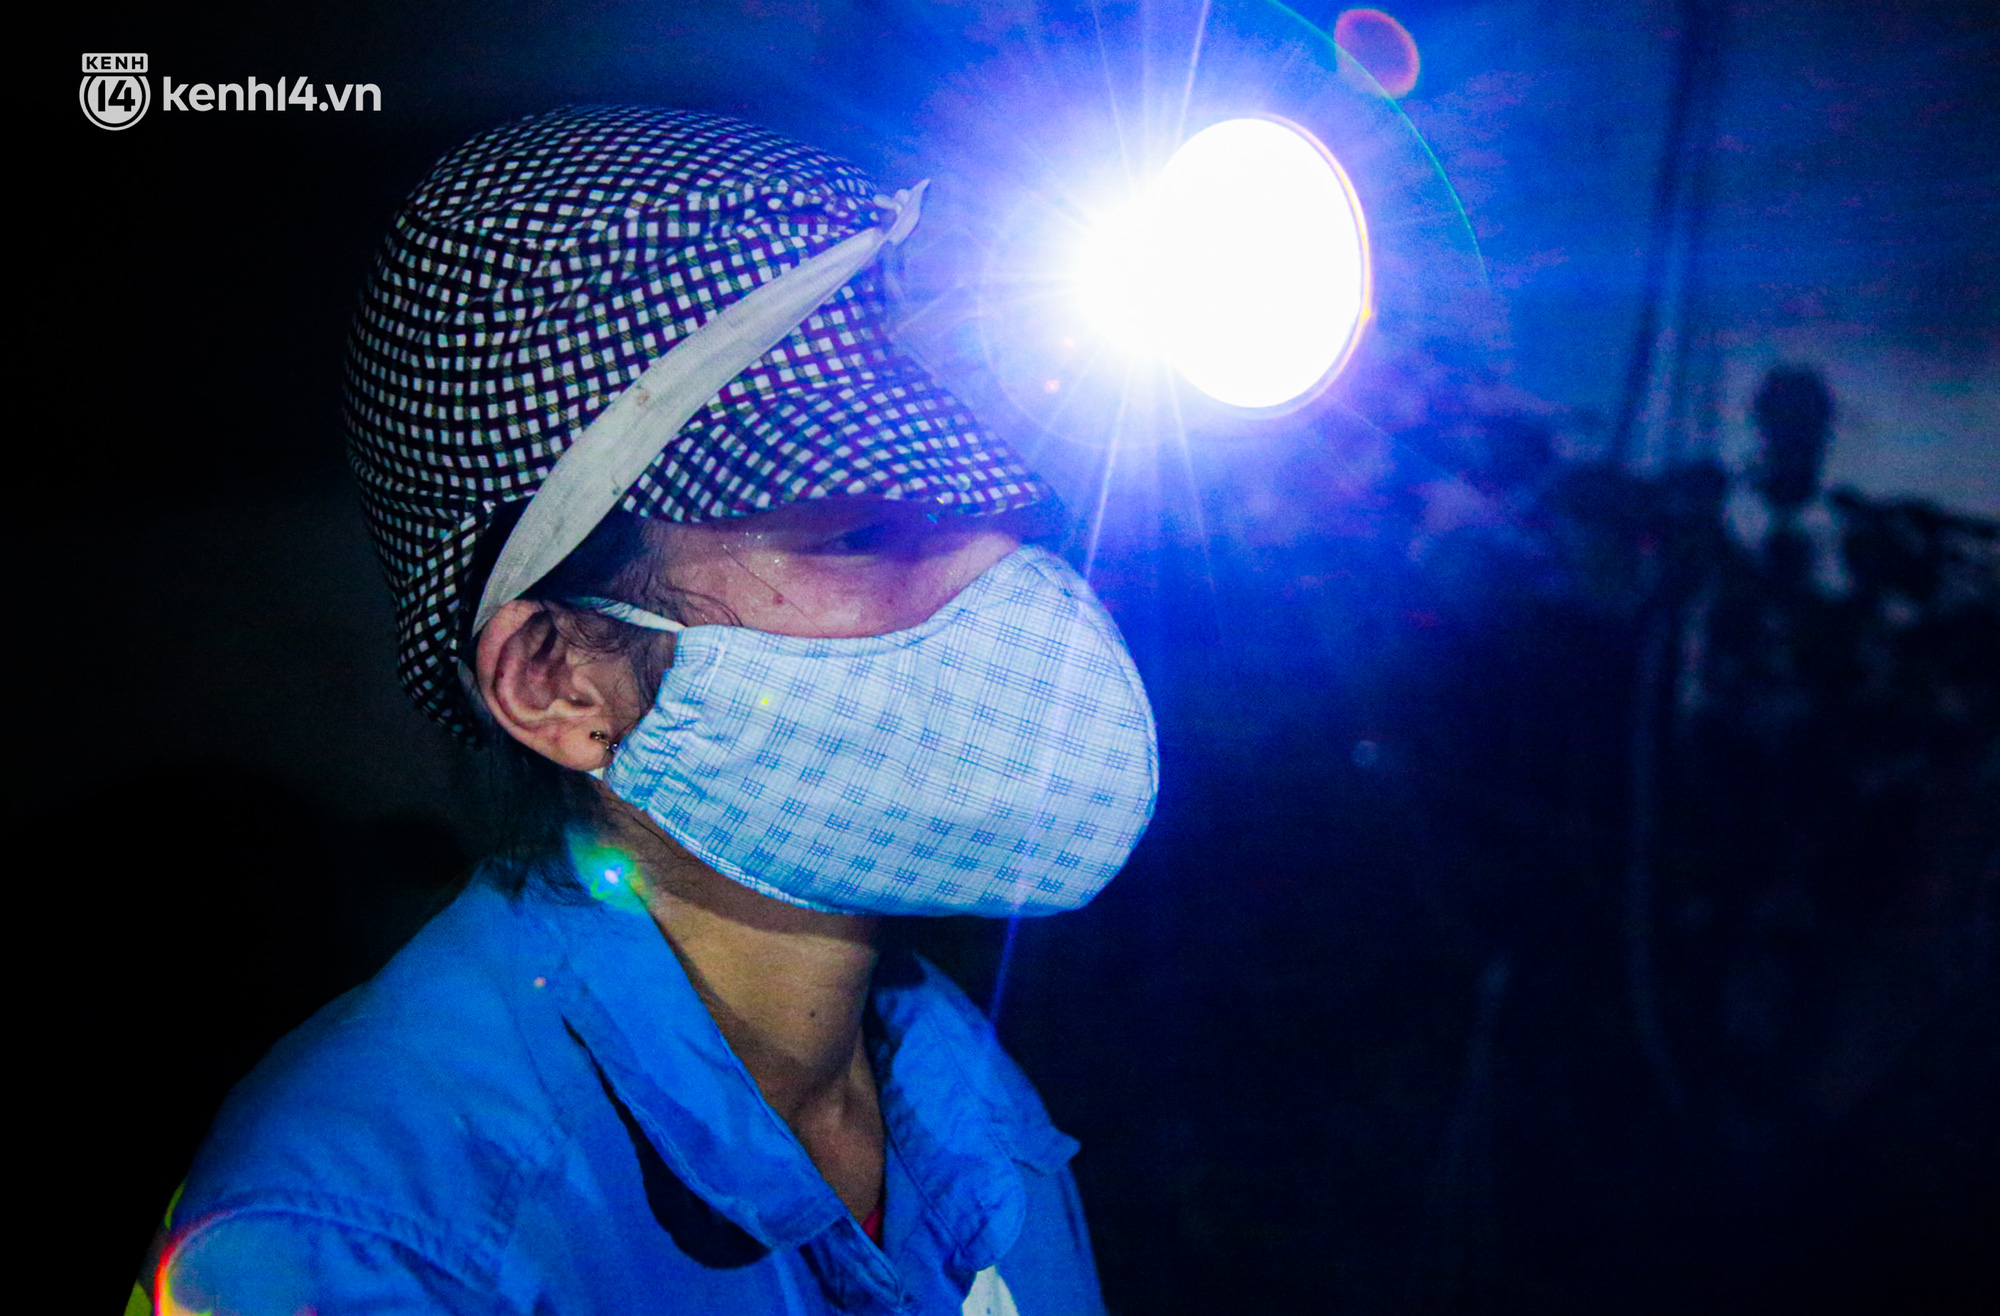 Ấm lòng: Được tặng 5 chiếc xe máy, nữ lao công ở Hà Nội bị cướp xe trong đêm đã tặng lại 2 chiếc cho đồng nghiệp - Ảnh 1.